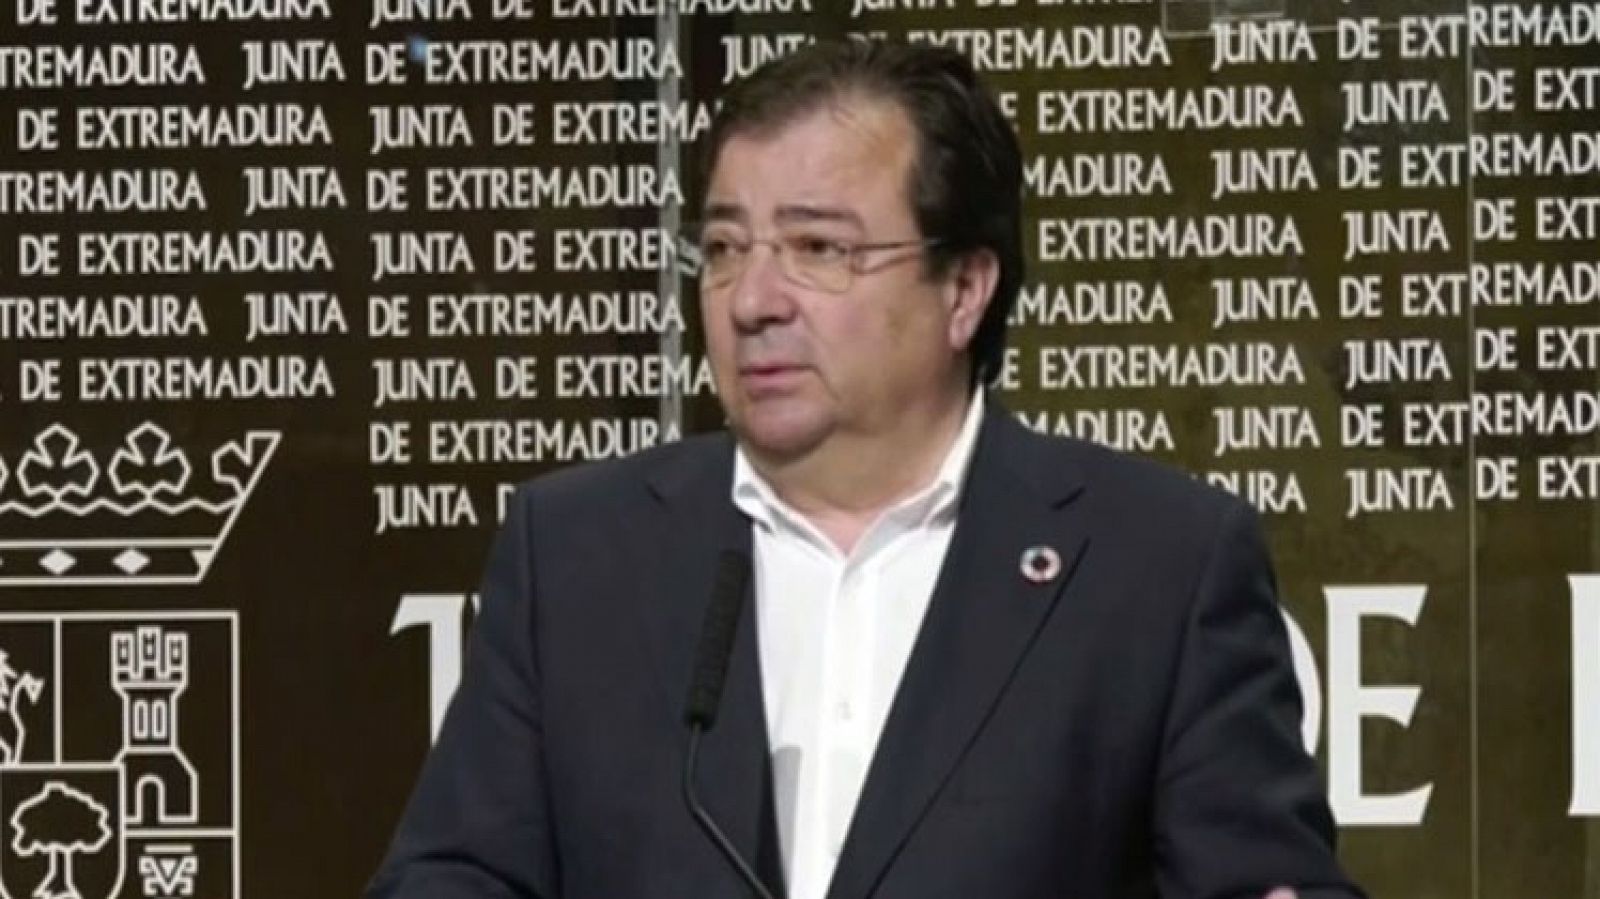 Fernández Vara cuestiona la subida del SMI en el sector agrícola y pide reunirse con la ministra de Trabajo - RTVE.es